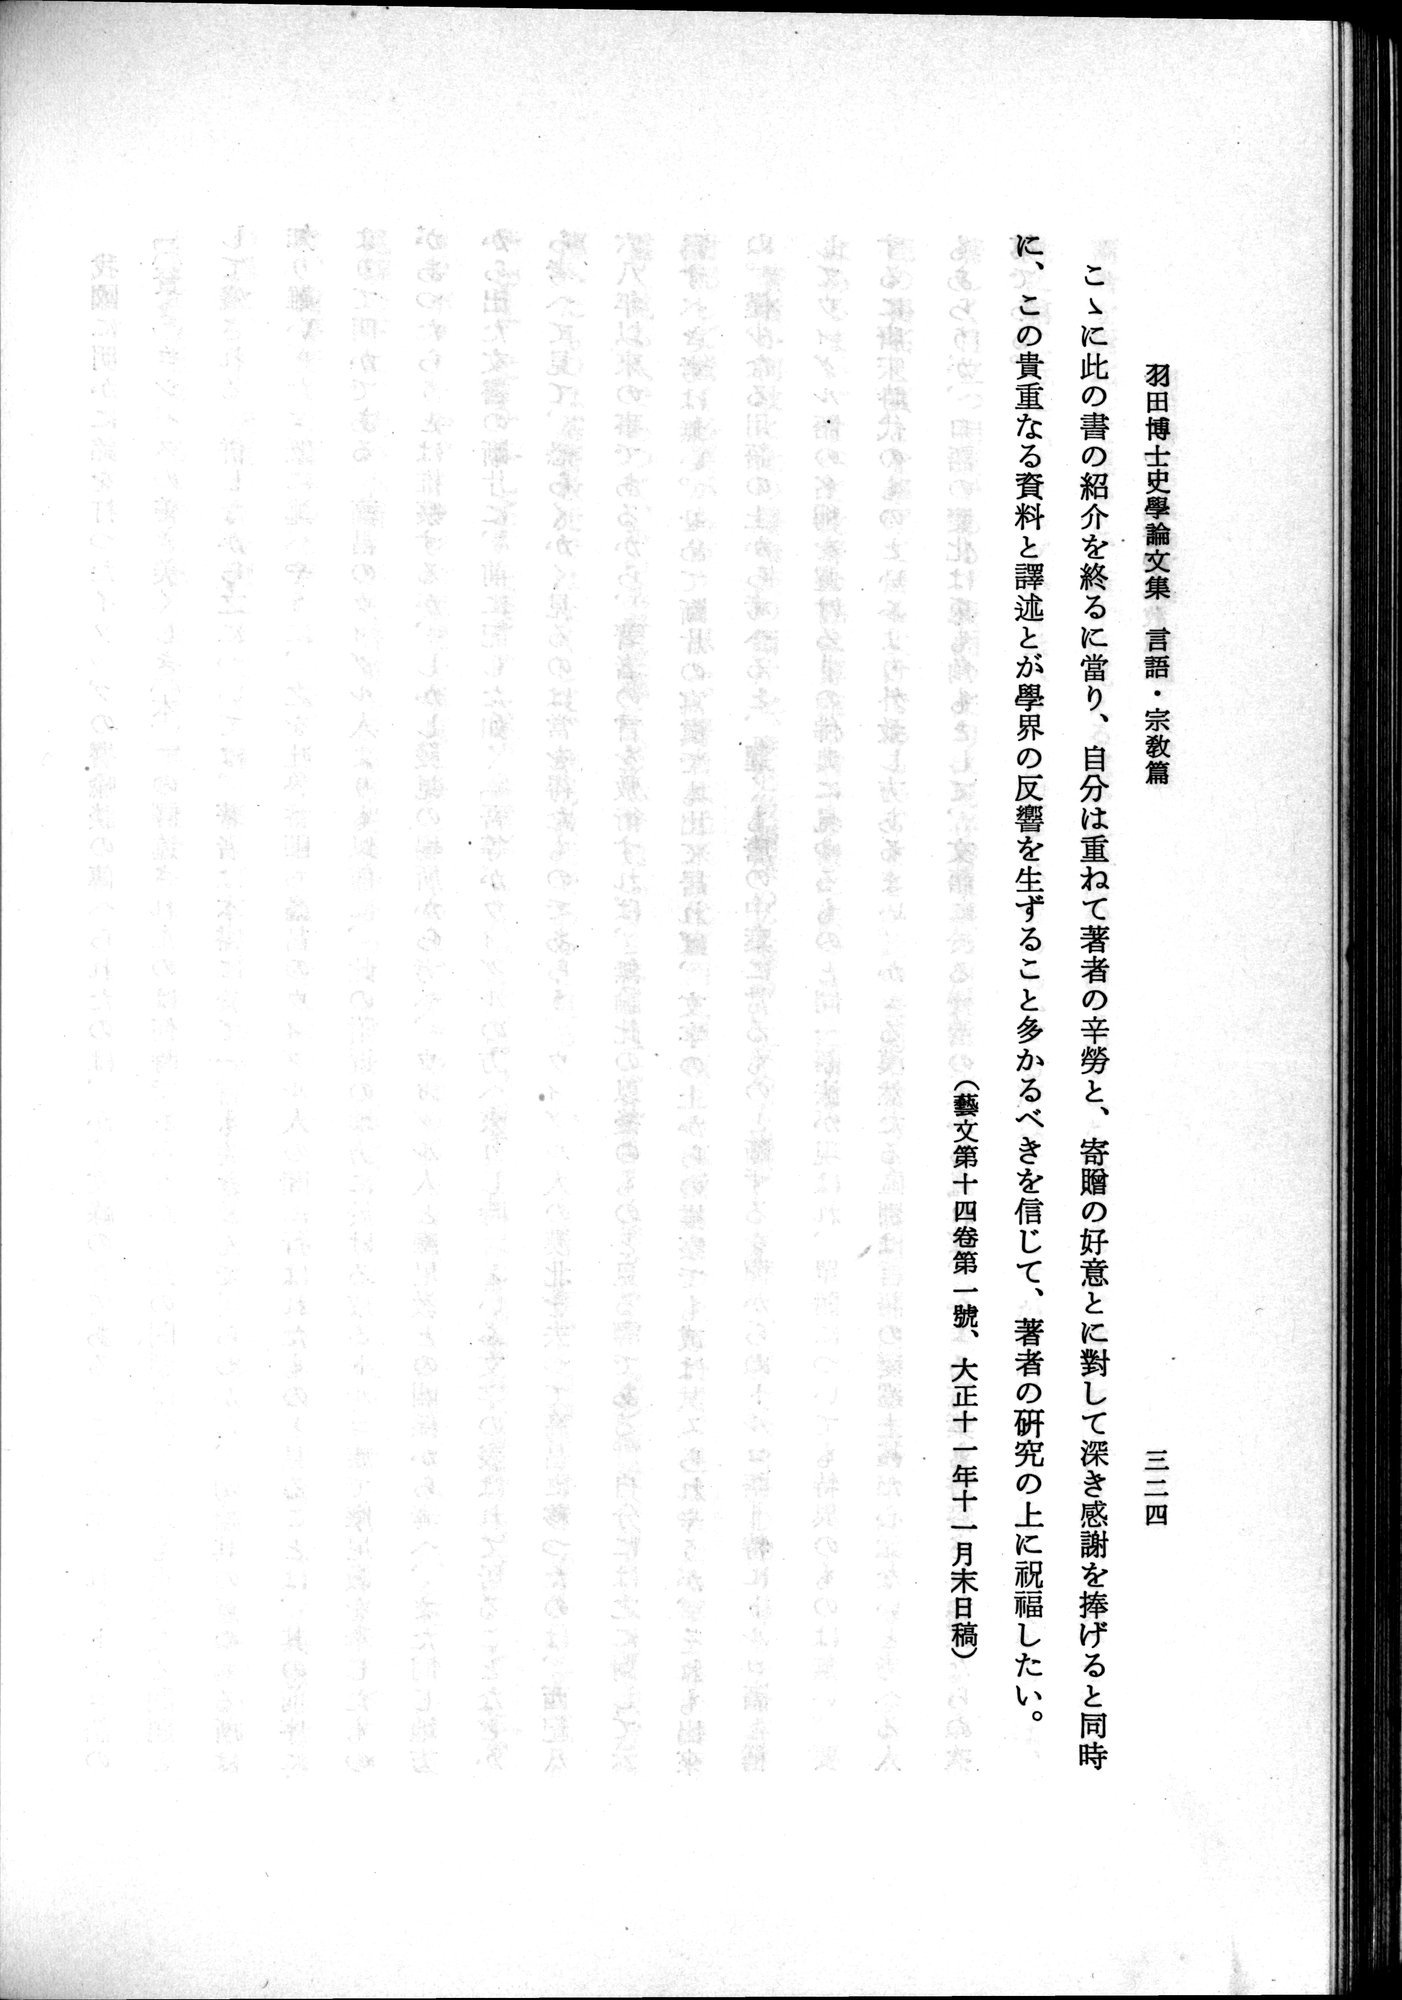 羽田博士史学論文集 : vol.2 / Page 386 (Grayscale High Resolution Image)